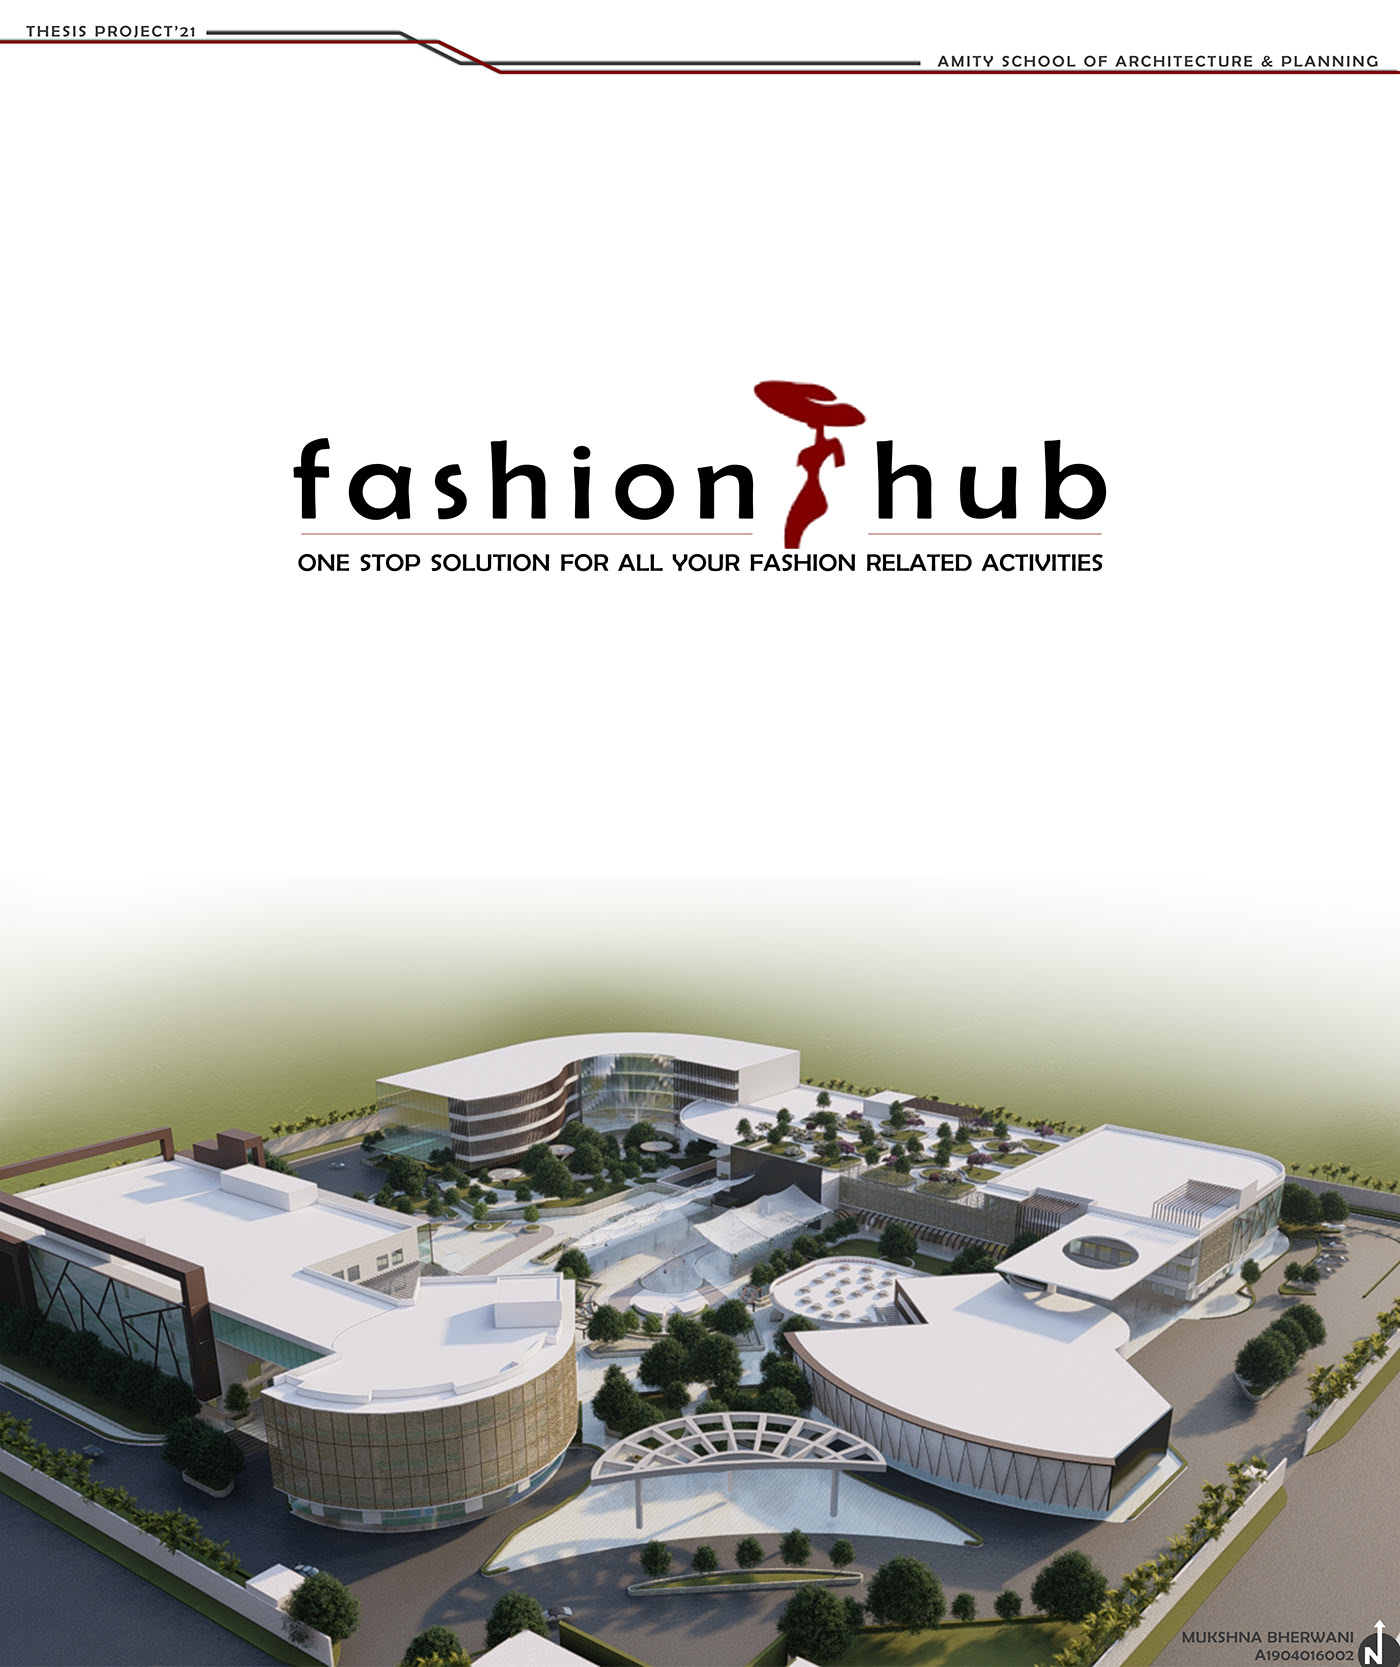 fashion design institute architecture thesis